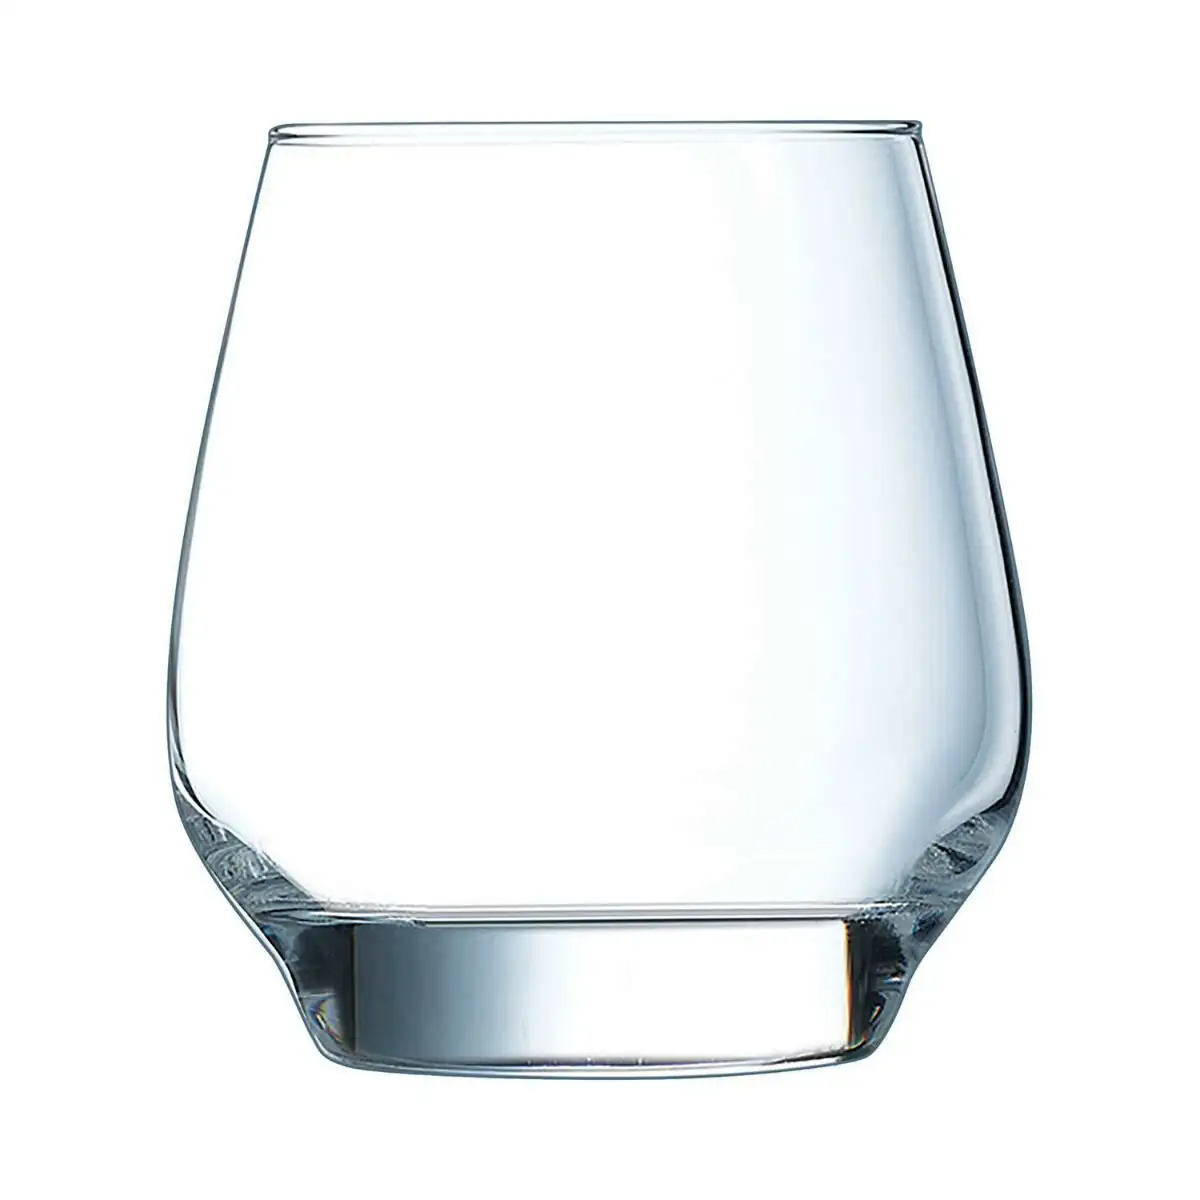 Ensemble de verres chef sommelier absoluty transparent 6 unite s verre 320 ml_2500. DIAYTAR SENEGAL - Votre Passage vers le Chic et l'Élégance. Naviguez à travers notre boutique en ligne pour trouver des produits qui ajoutent une touche sophistiquée à votre style.